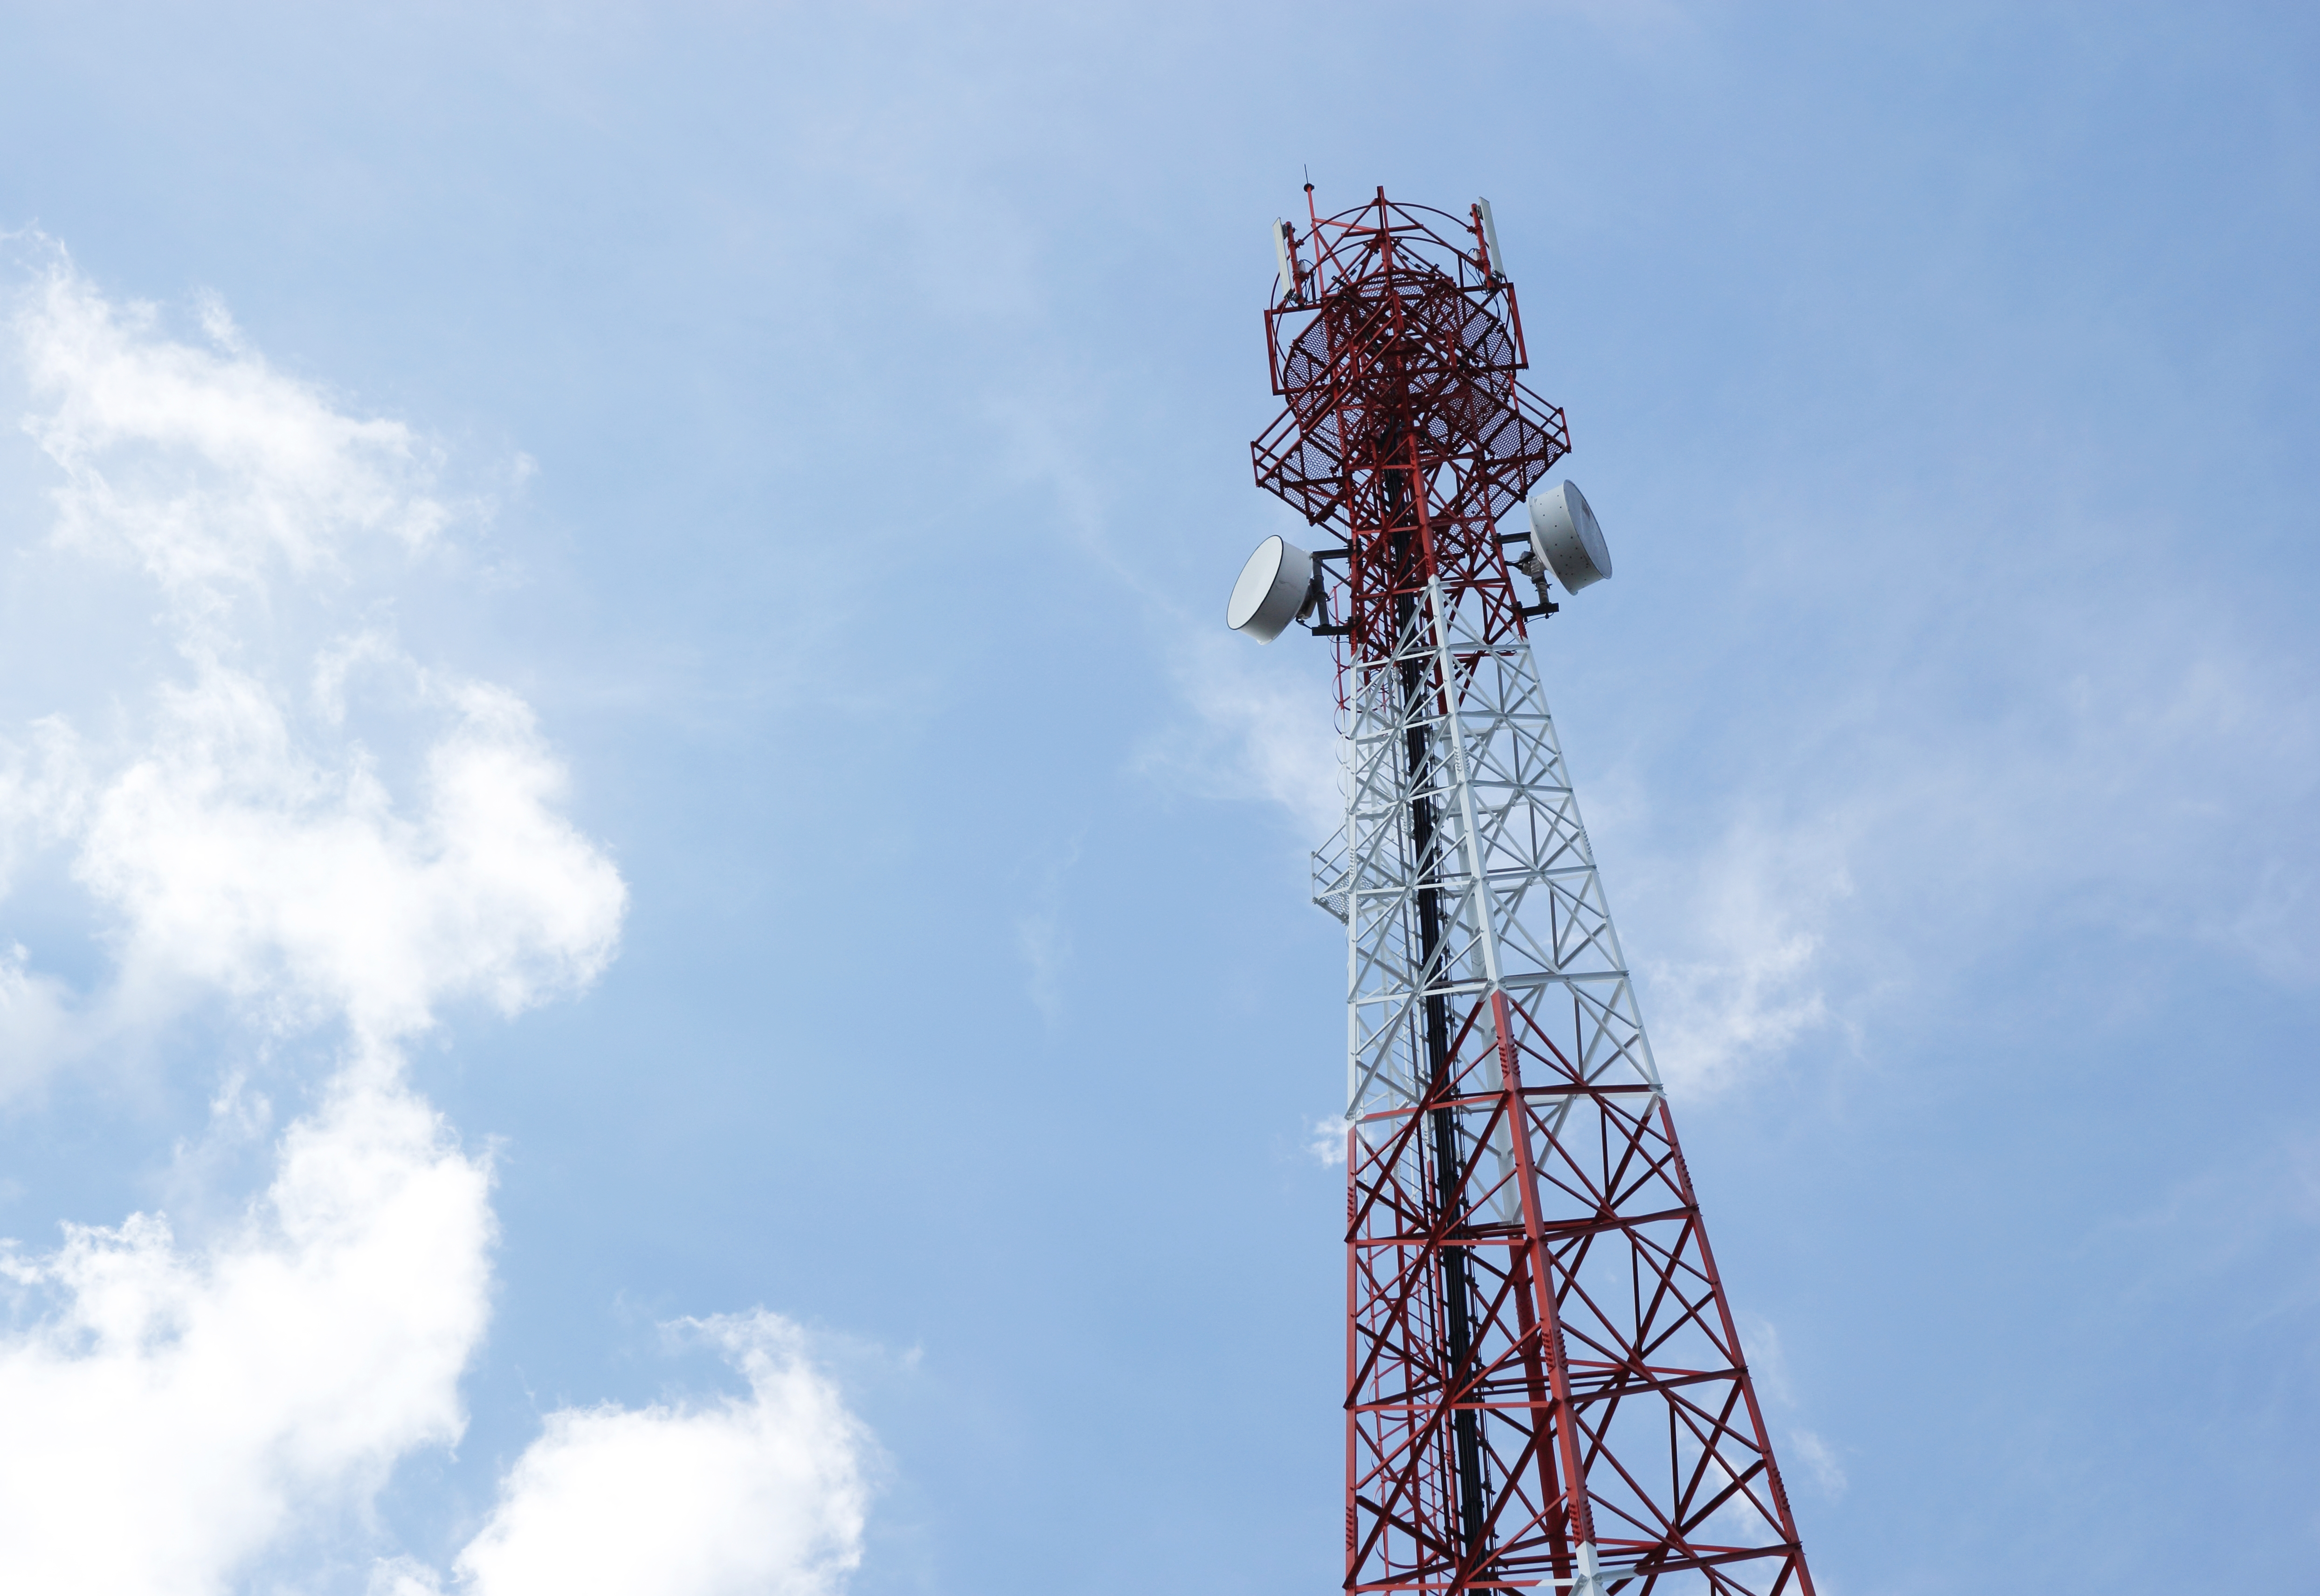 El funcionamiento de las antenas está limitado a un número fijo de dispositivos conectados. (Freepik)